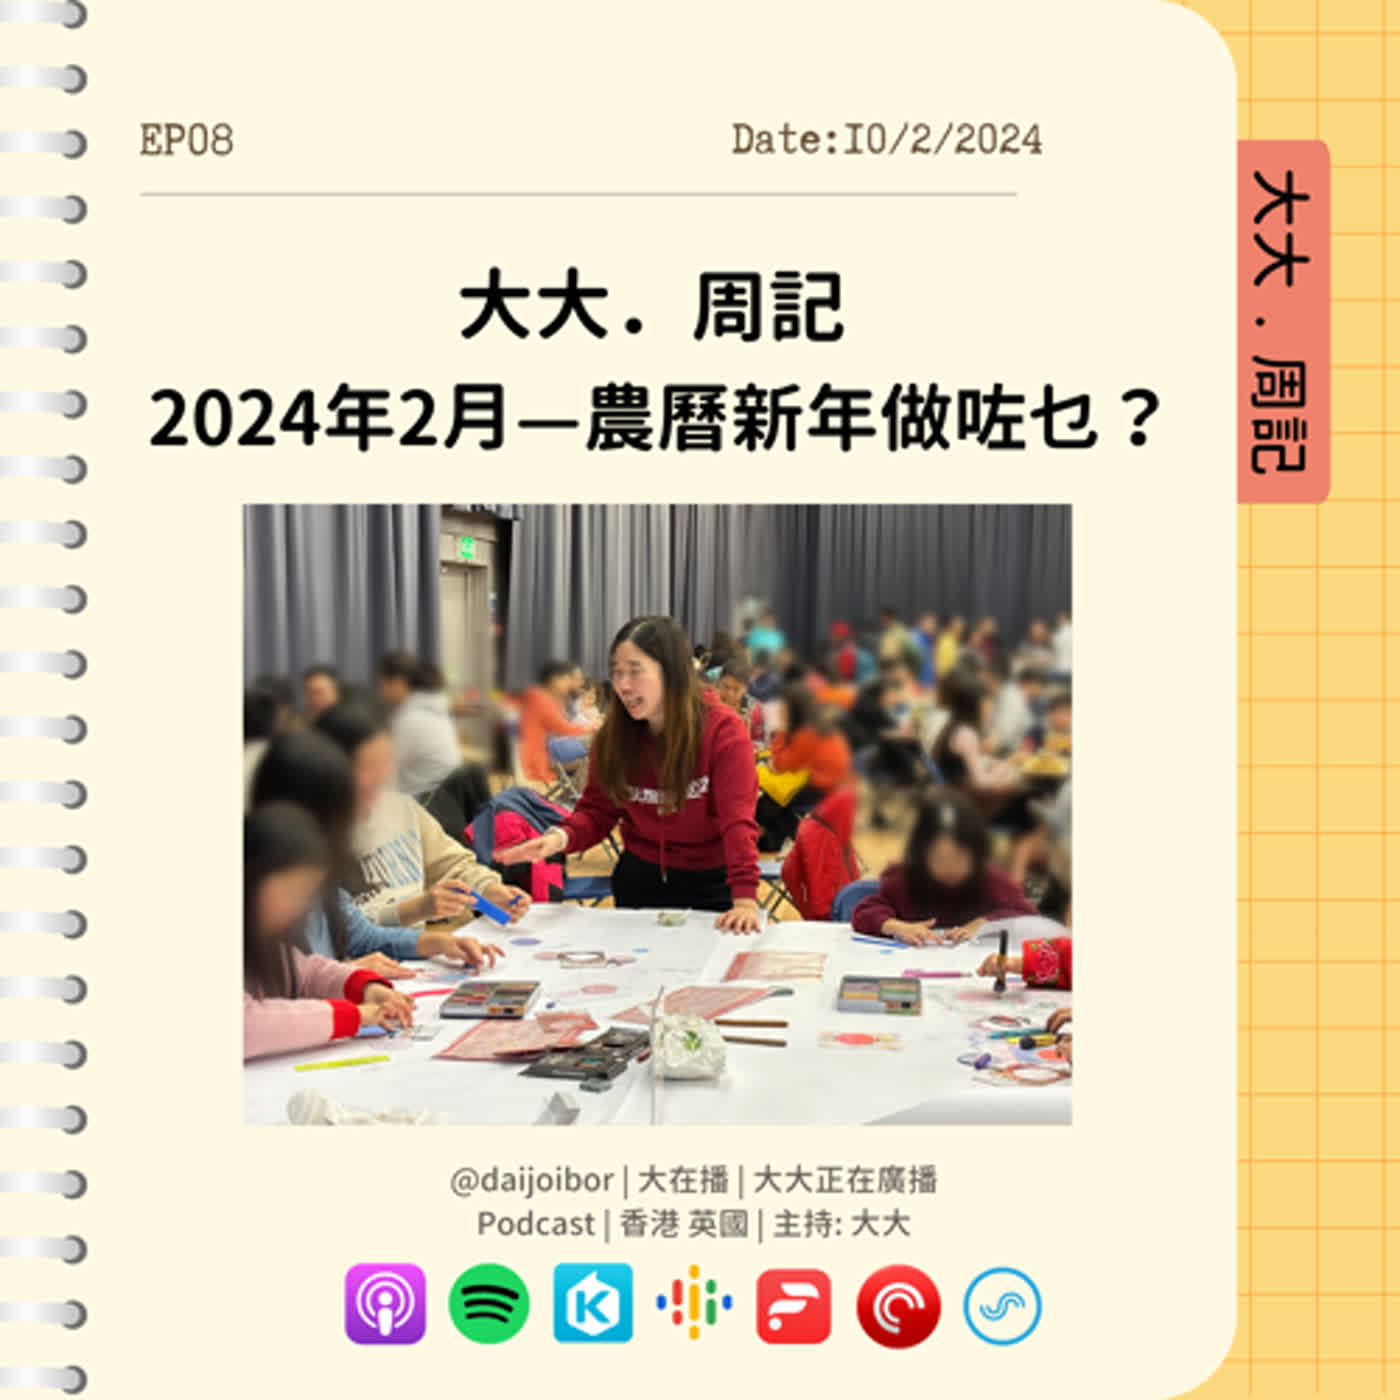 【大大周記】2024年 · 二月 ❀ 農曆新年做咗乜？